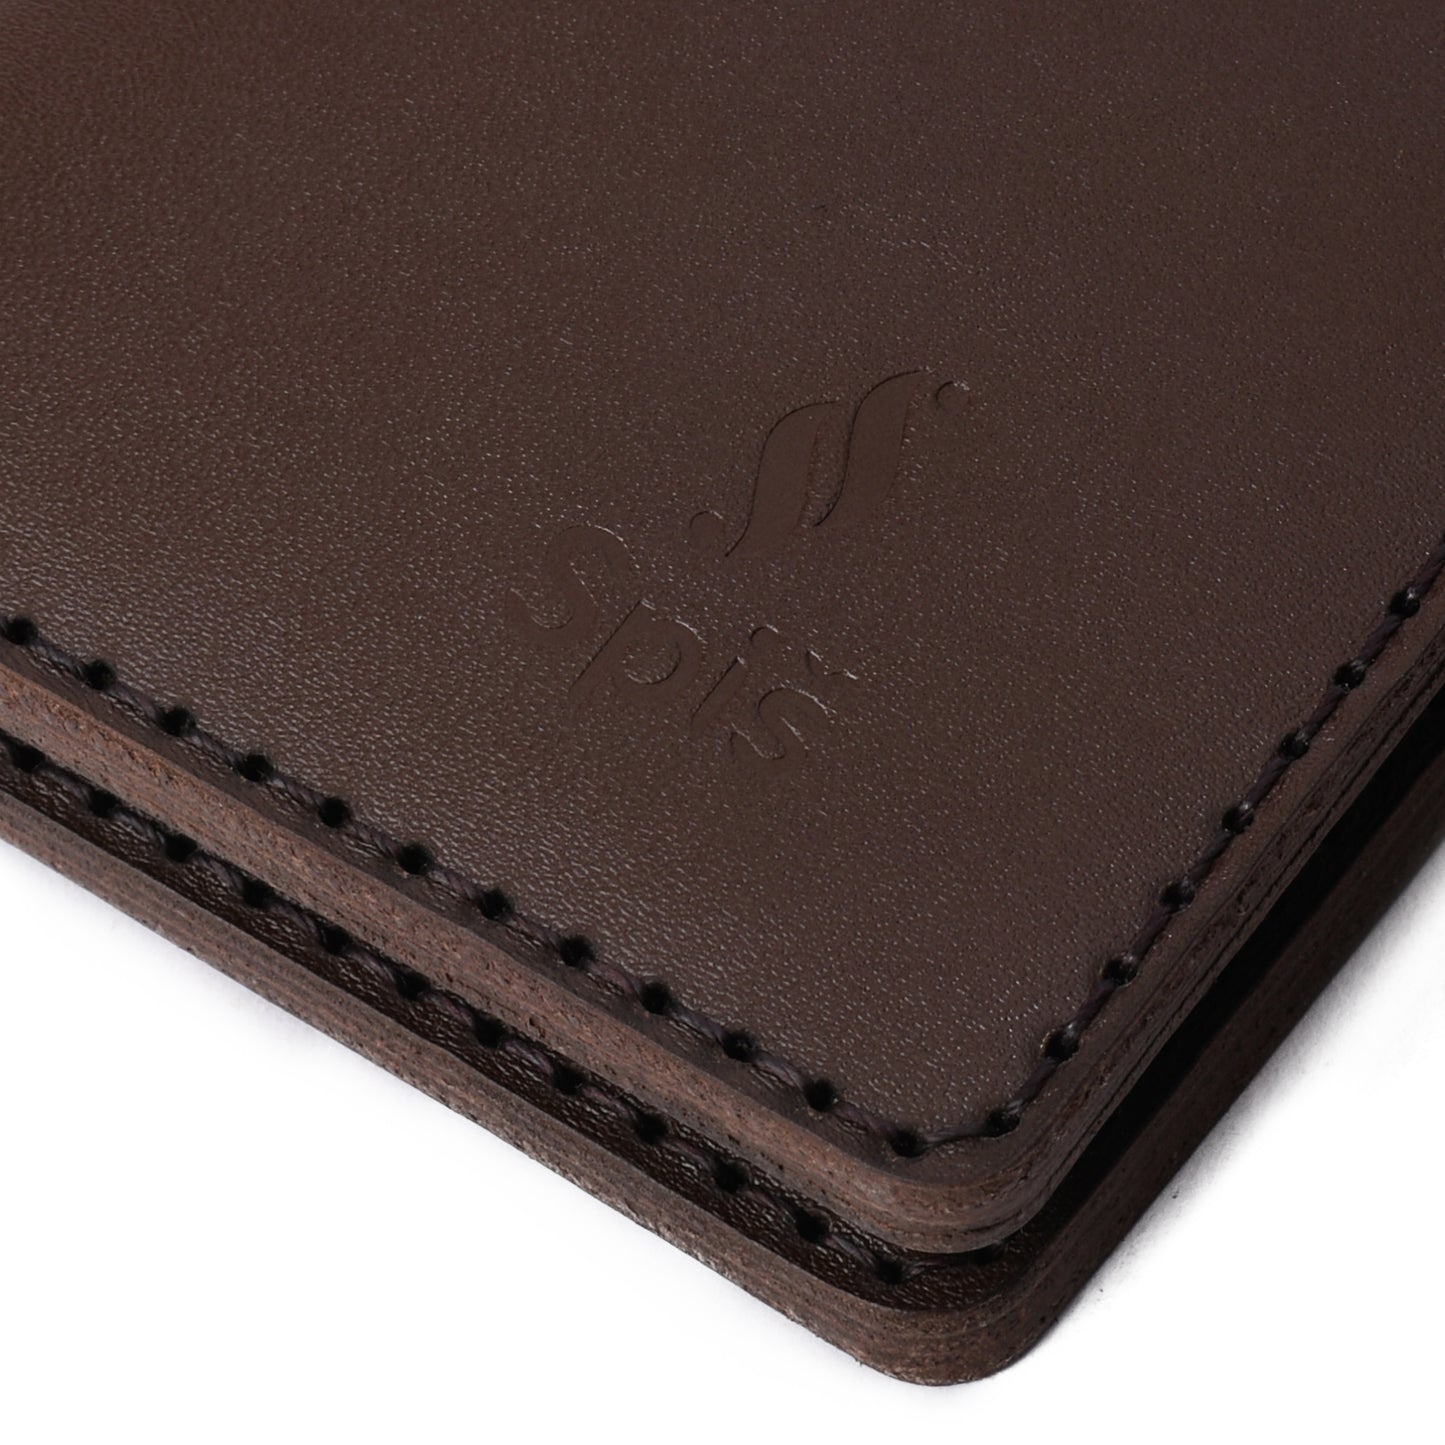 Slim brown leather wallet